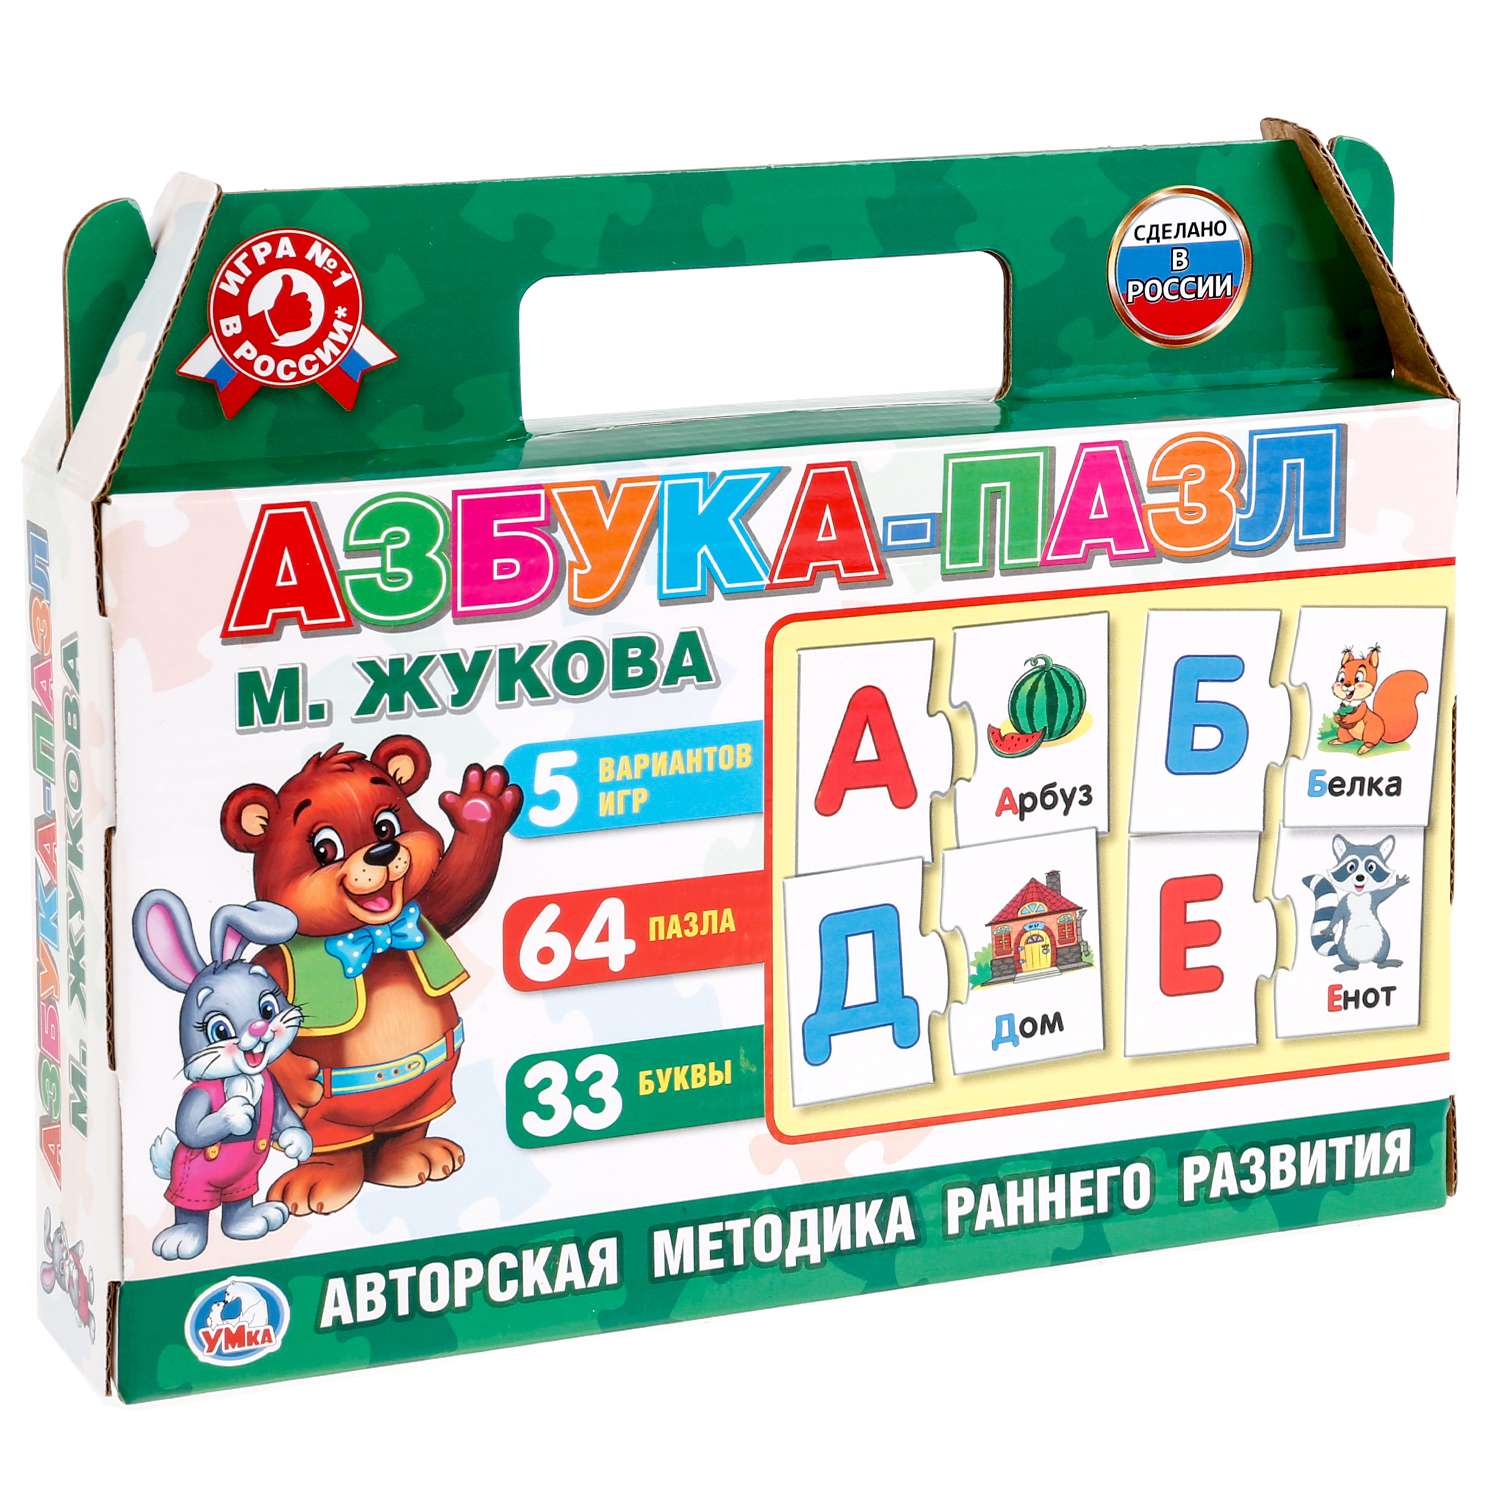 Пазл УМка Азбука в чемодане 5 игр 64 пазла Жукова 246592 - фото 1